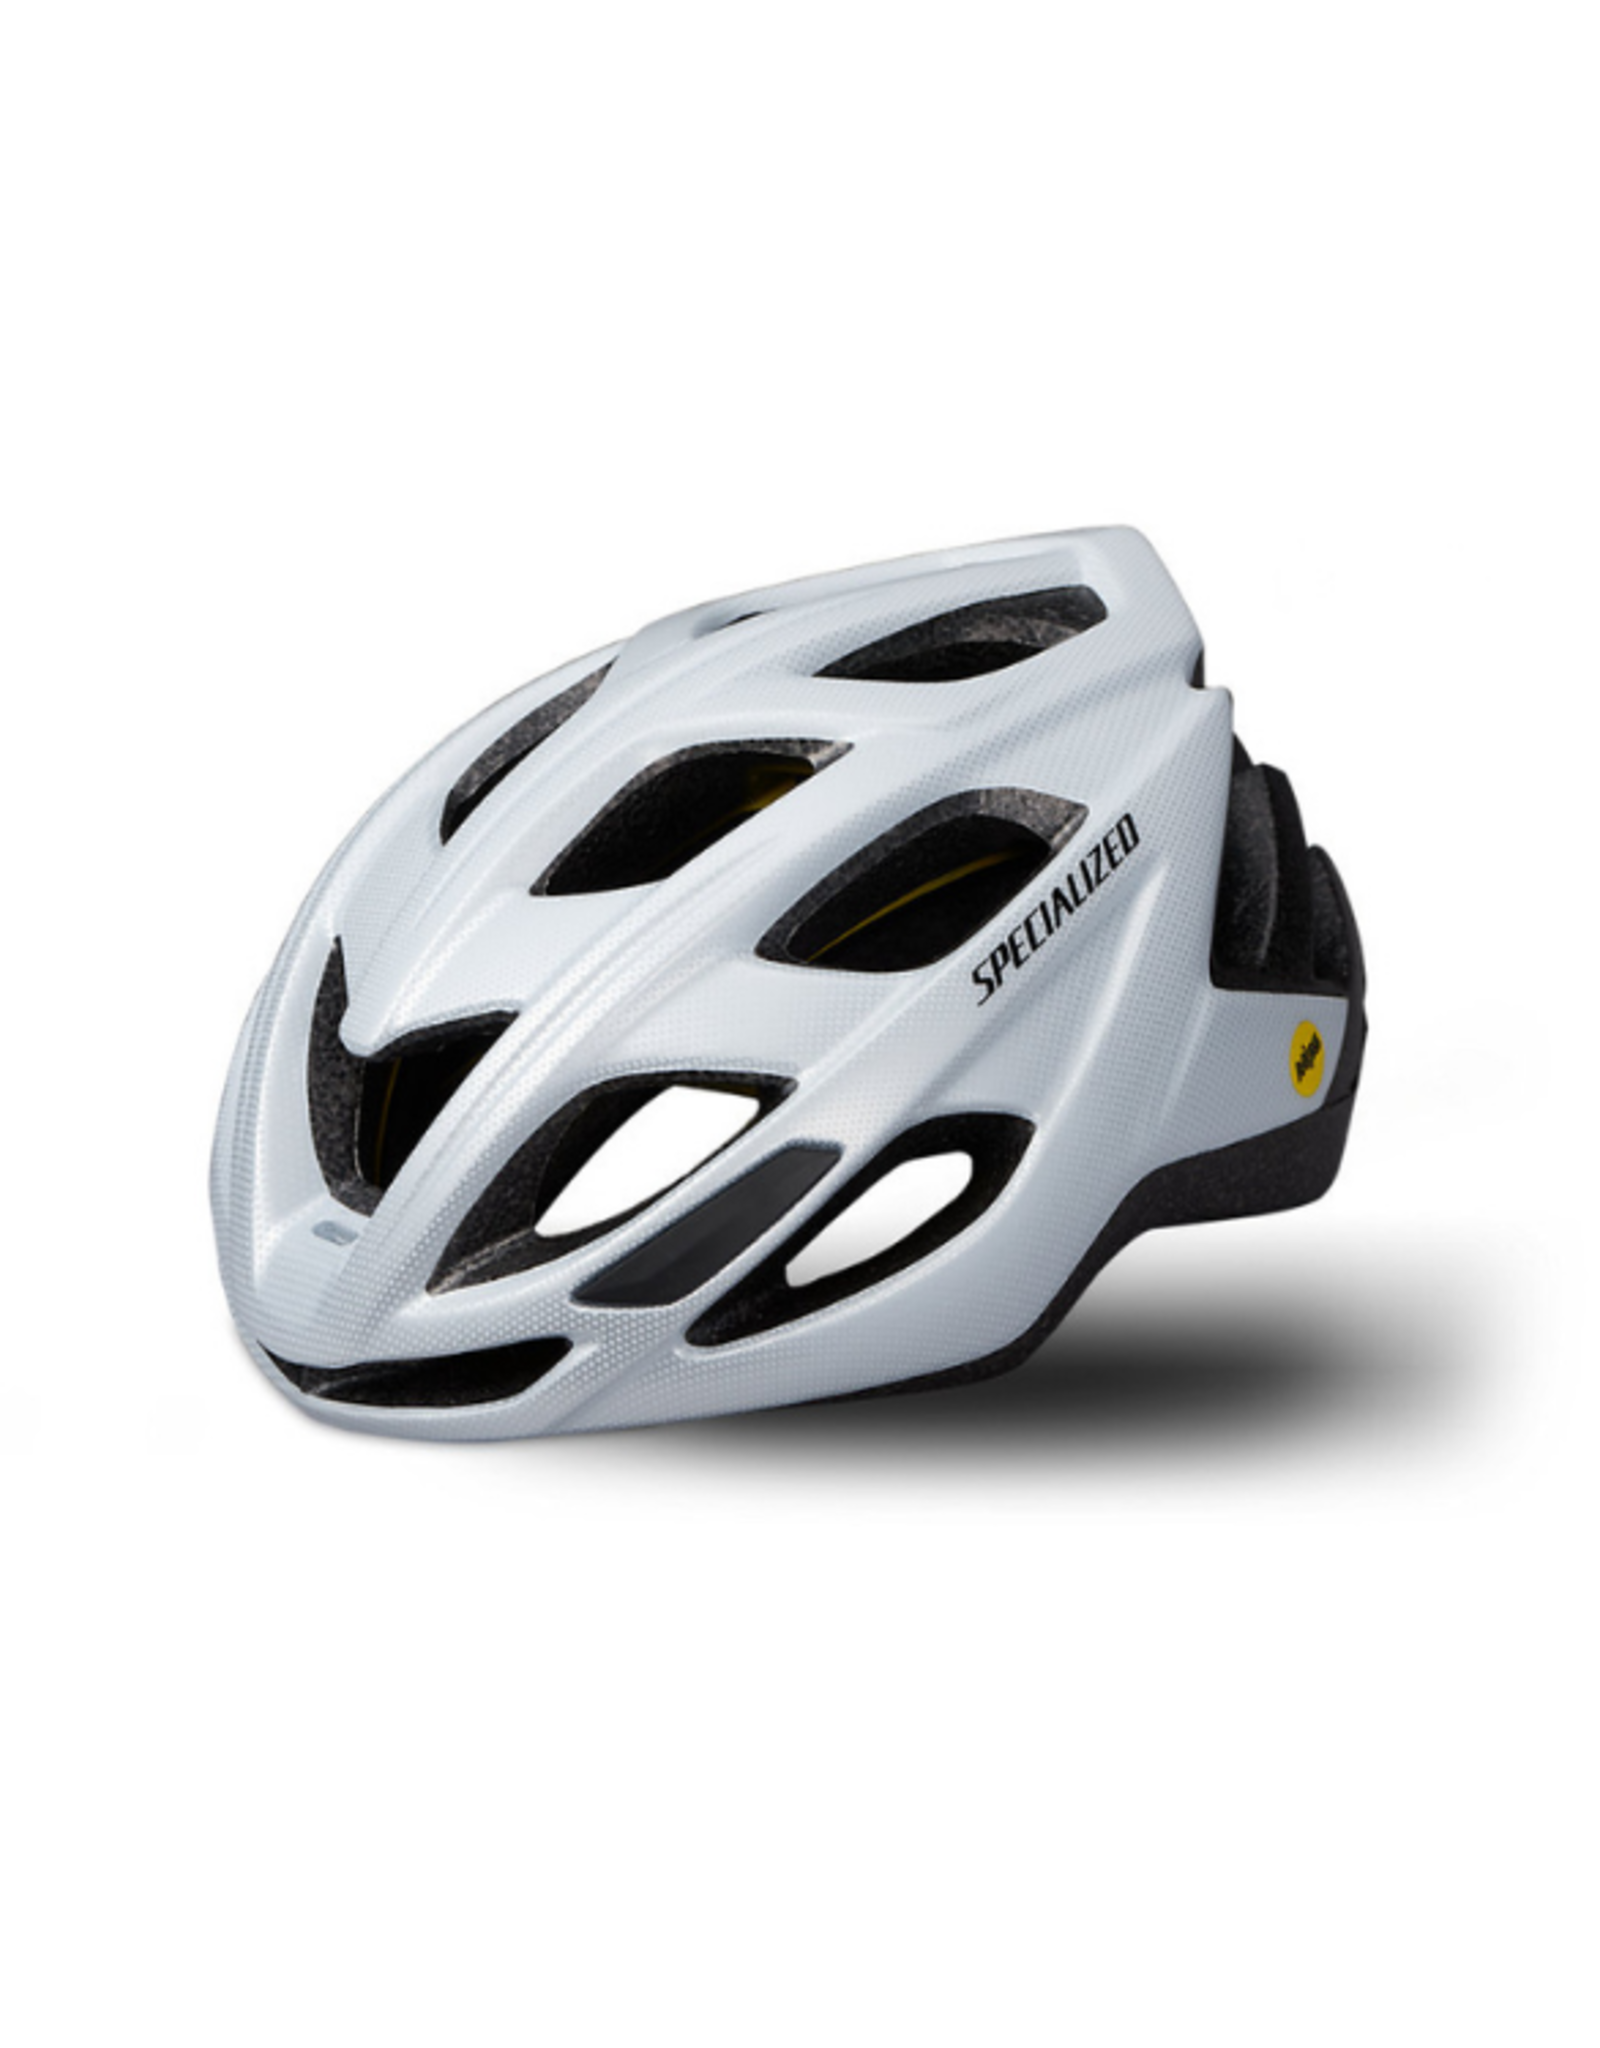 Specialized Specialized 2021 Chamonix 2  MIPS Bike Helmet